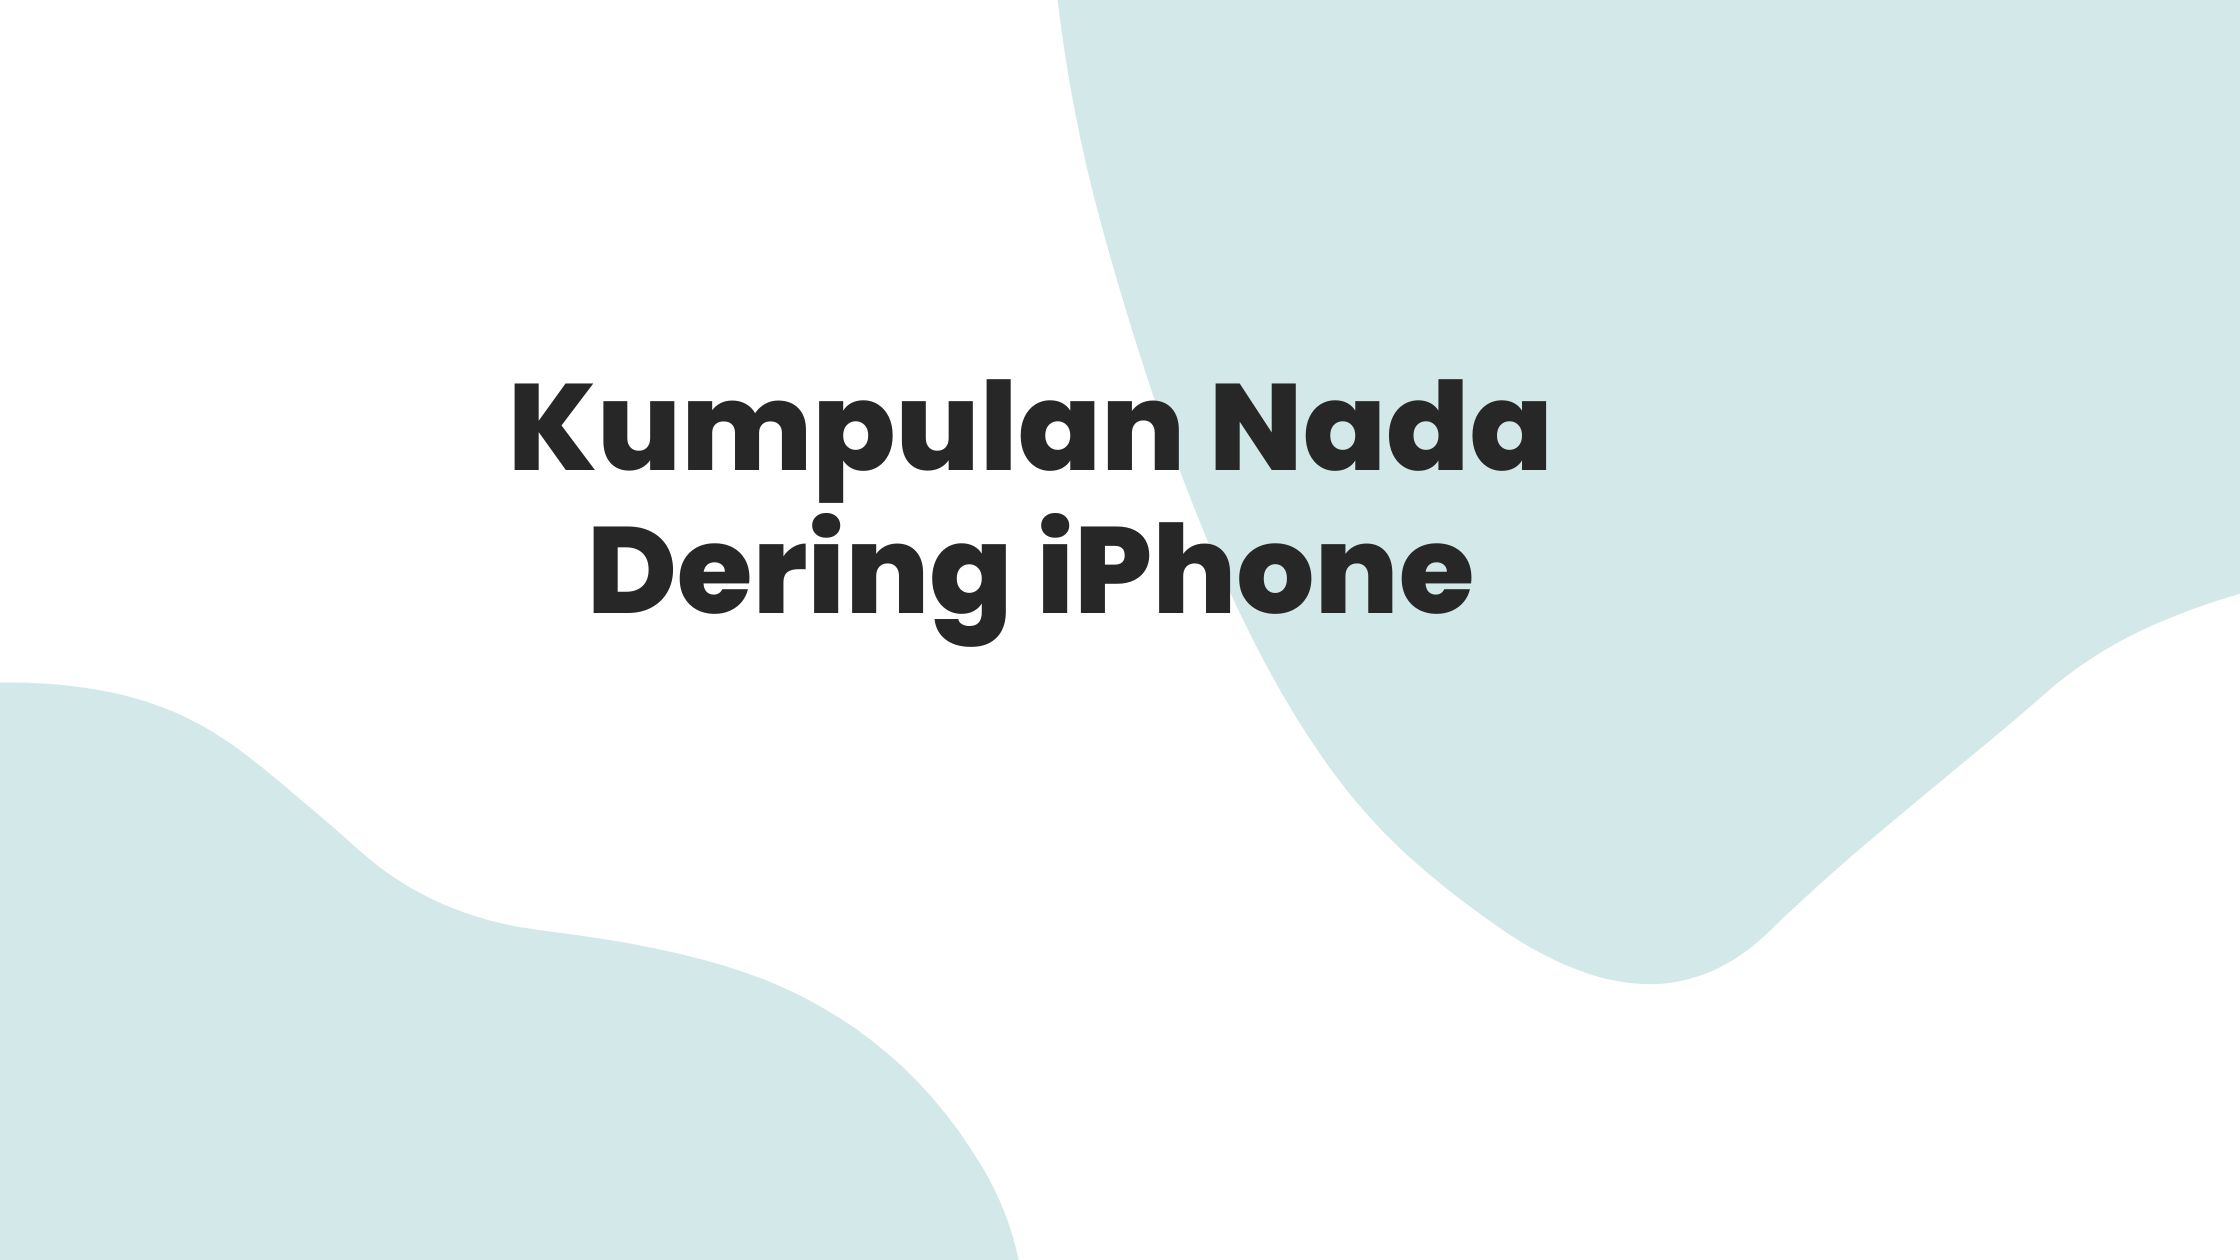 Download Nada Dering iPhone